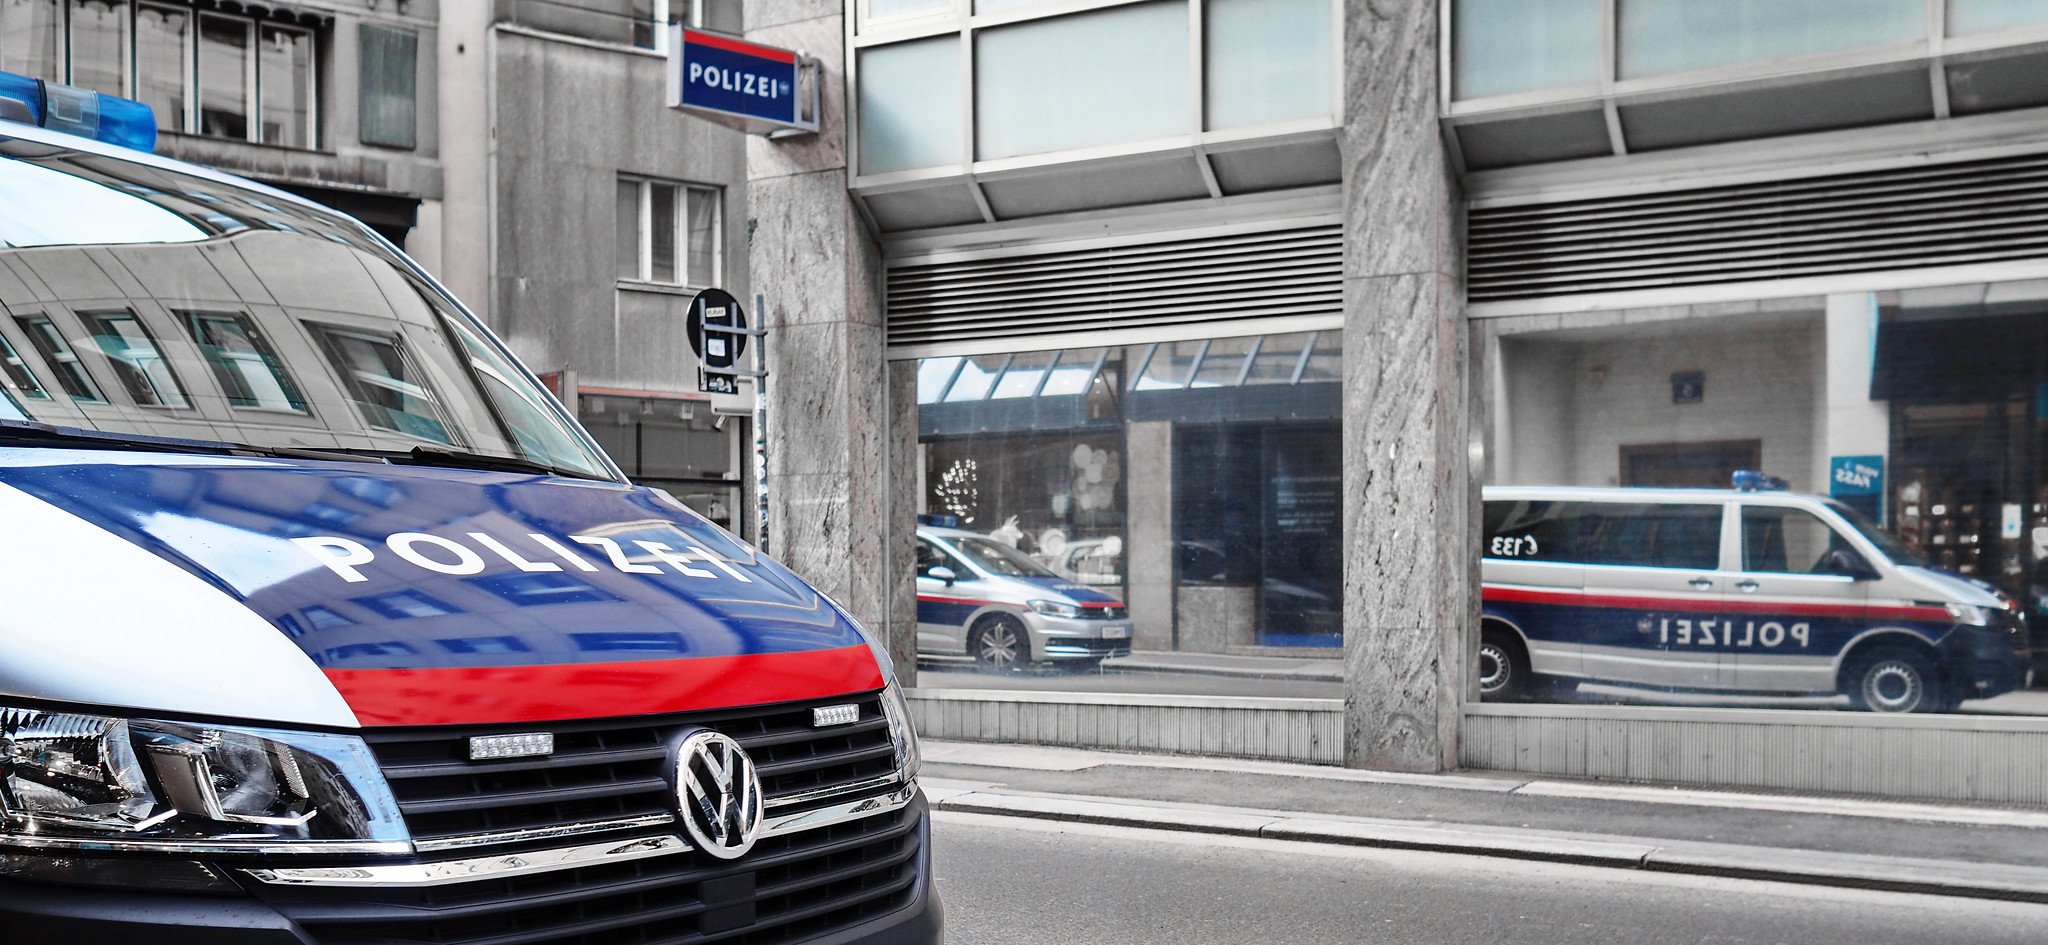 Österreich Polizeifahrzeuge spiegeln sich in Fensterscheibe